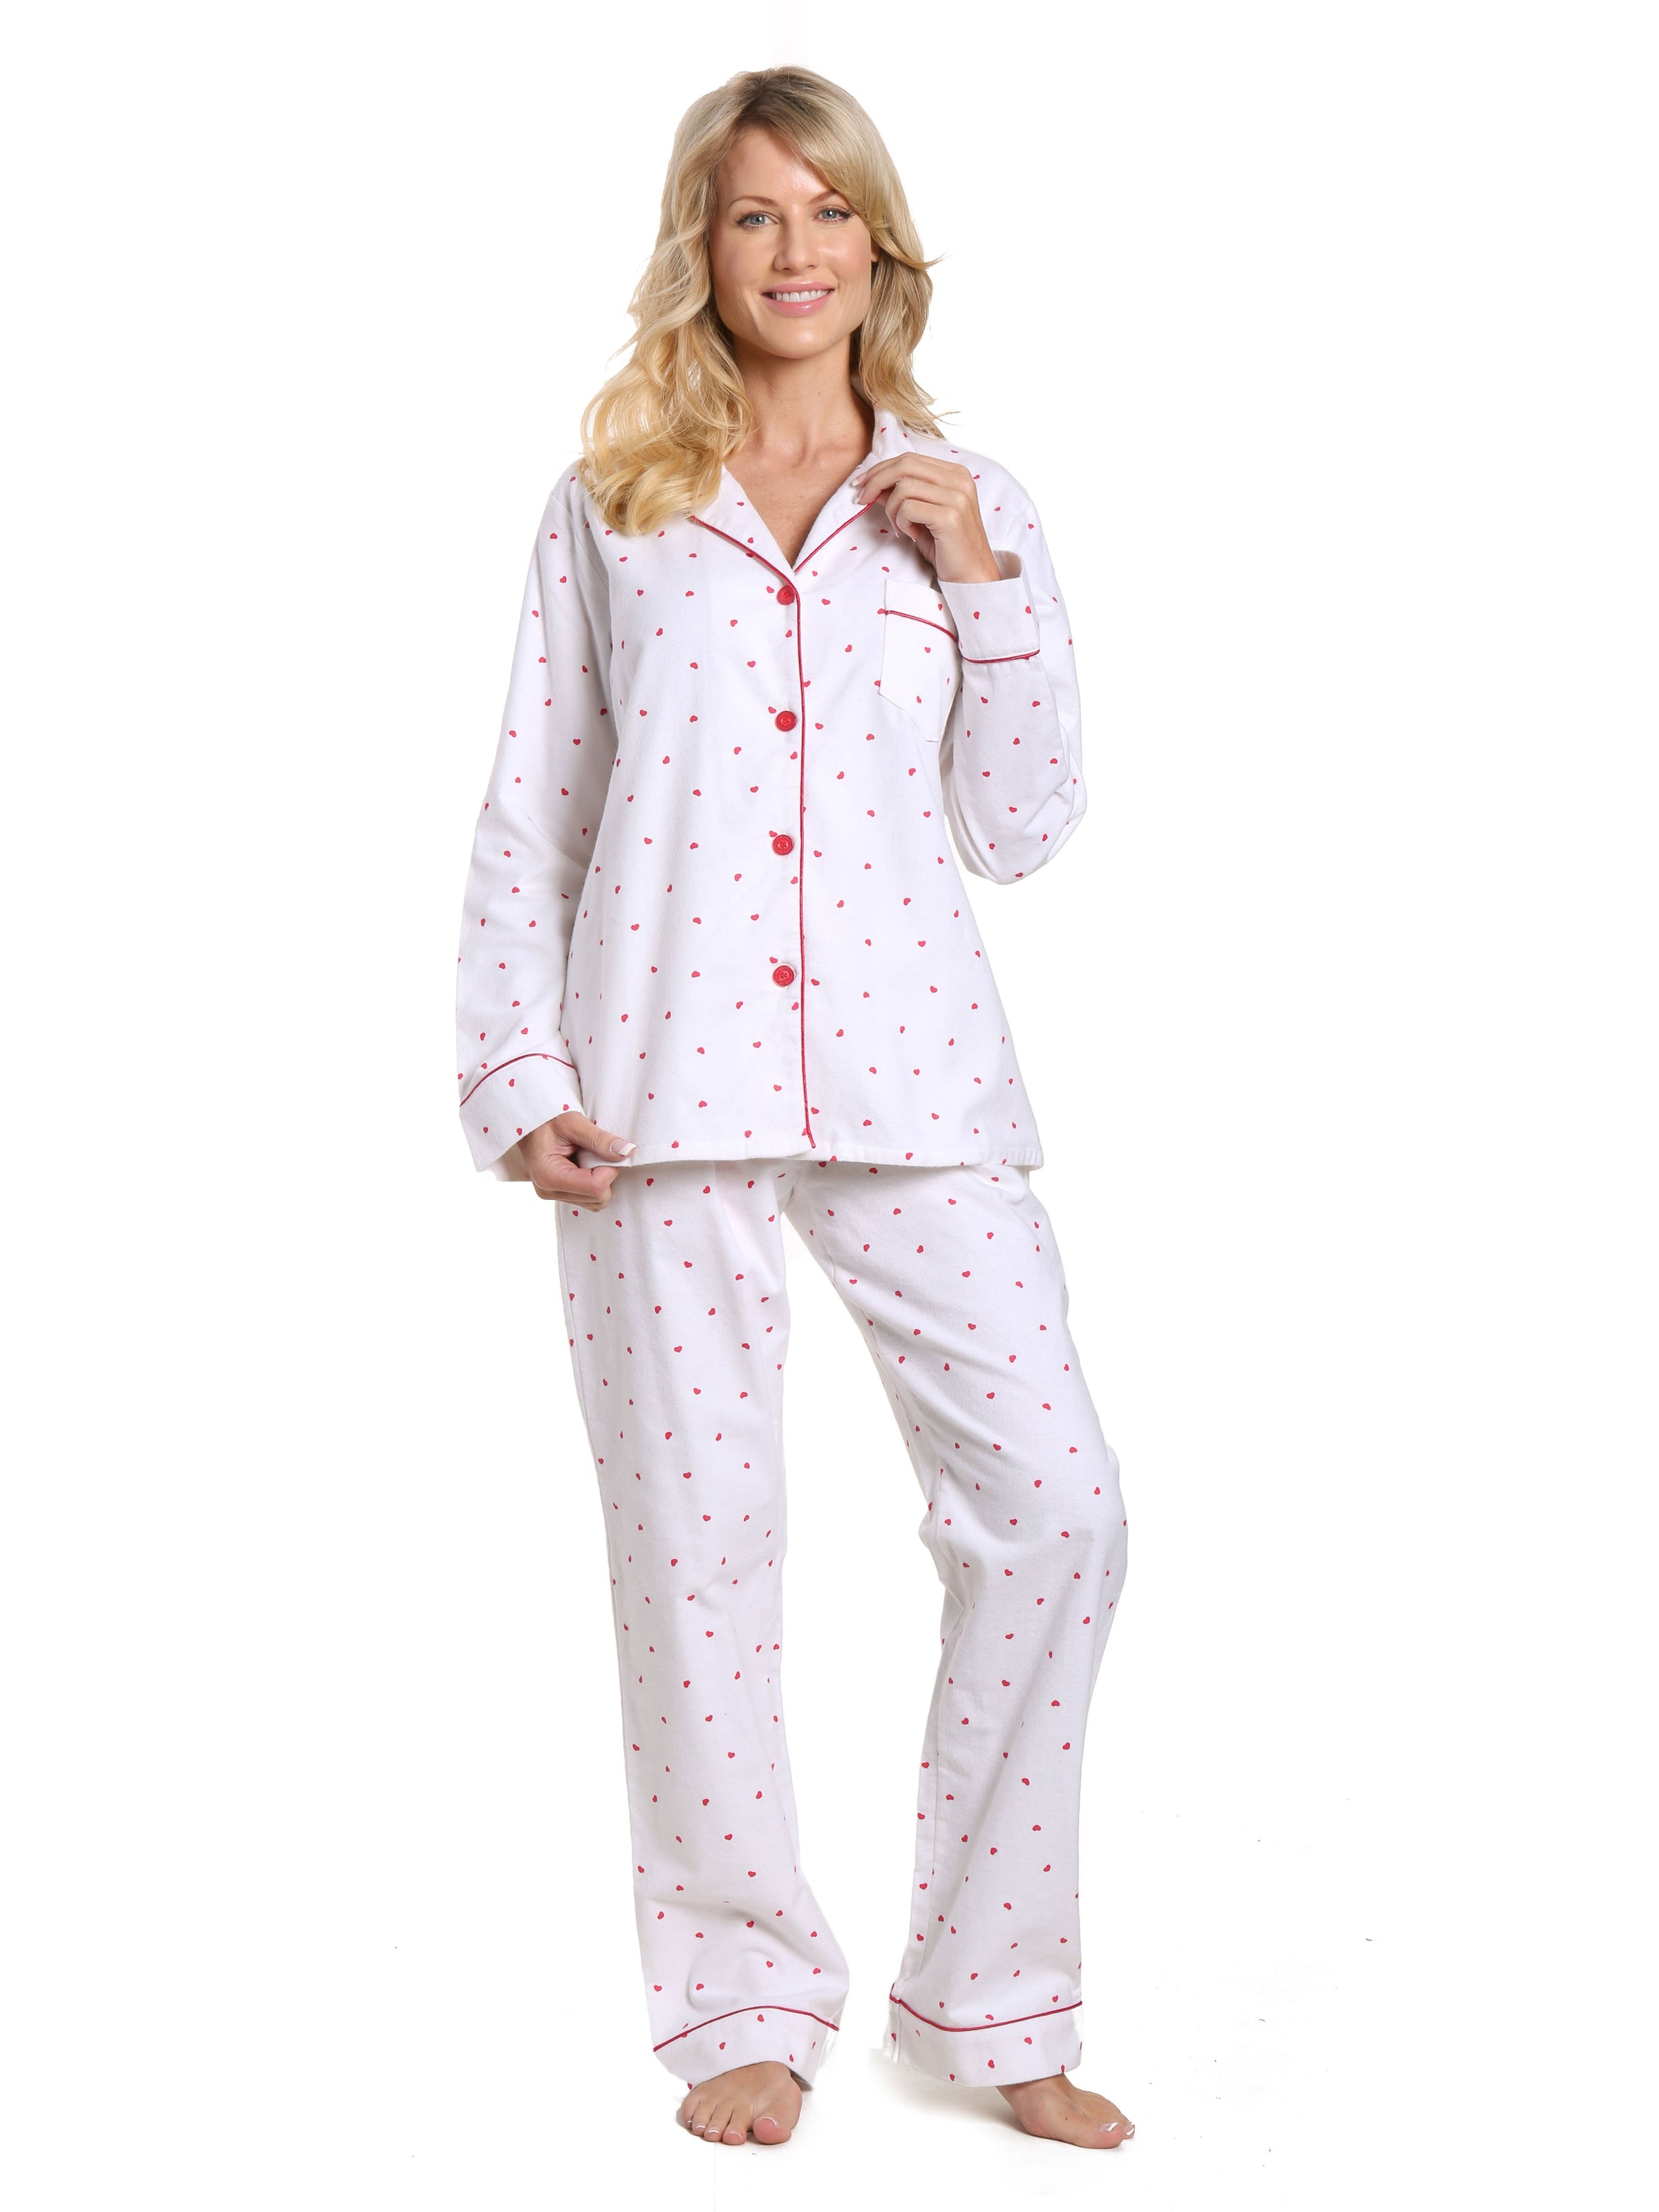 Women's 100% Cotton Flannel Pajama Sleepwear Set - Little Hearts